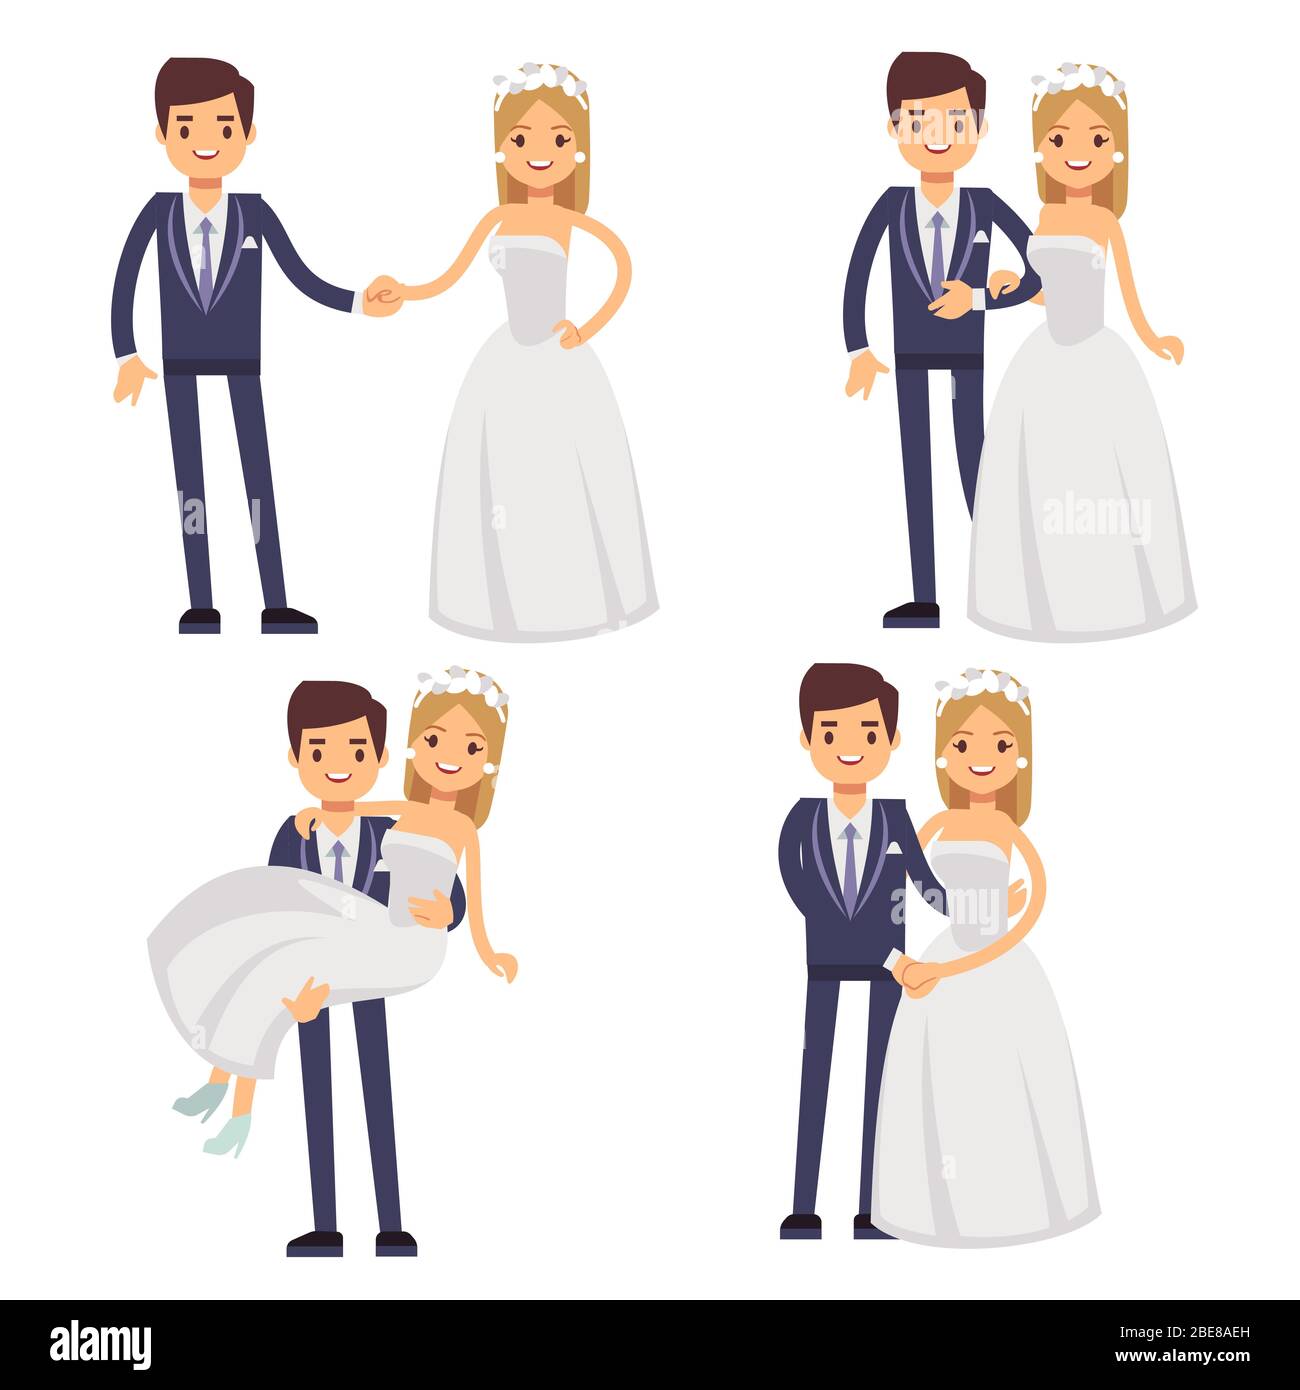 Cartoon Hochzeit Paar. Nur verheiratet Vektorfiguren. Bräutigam und Braut lieben Zweisamkeit und Glück Illustration Stock Vektor